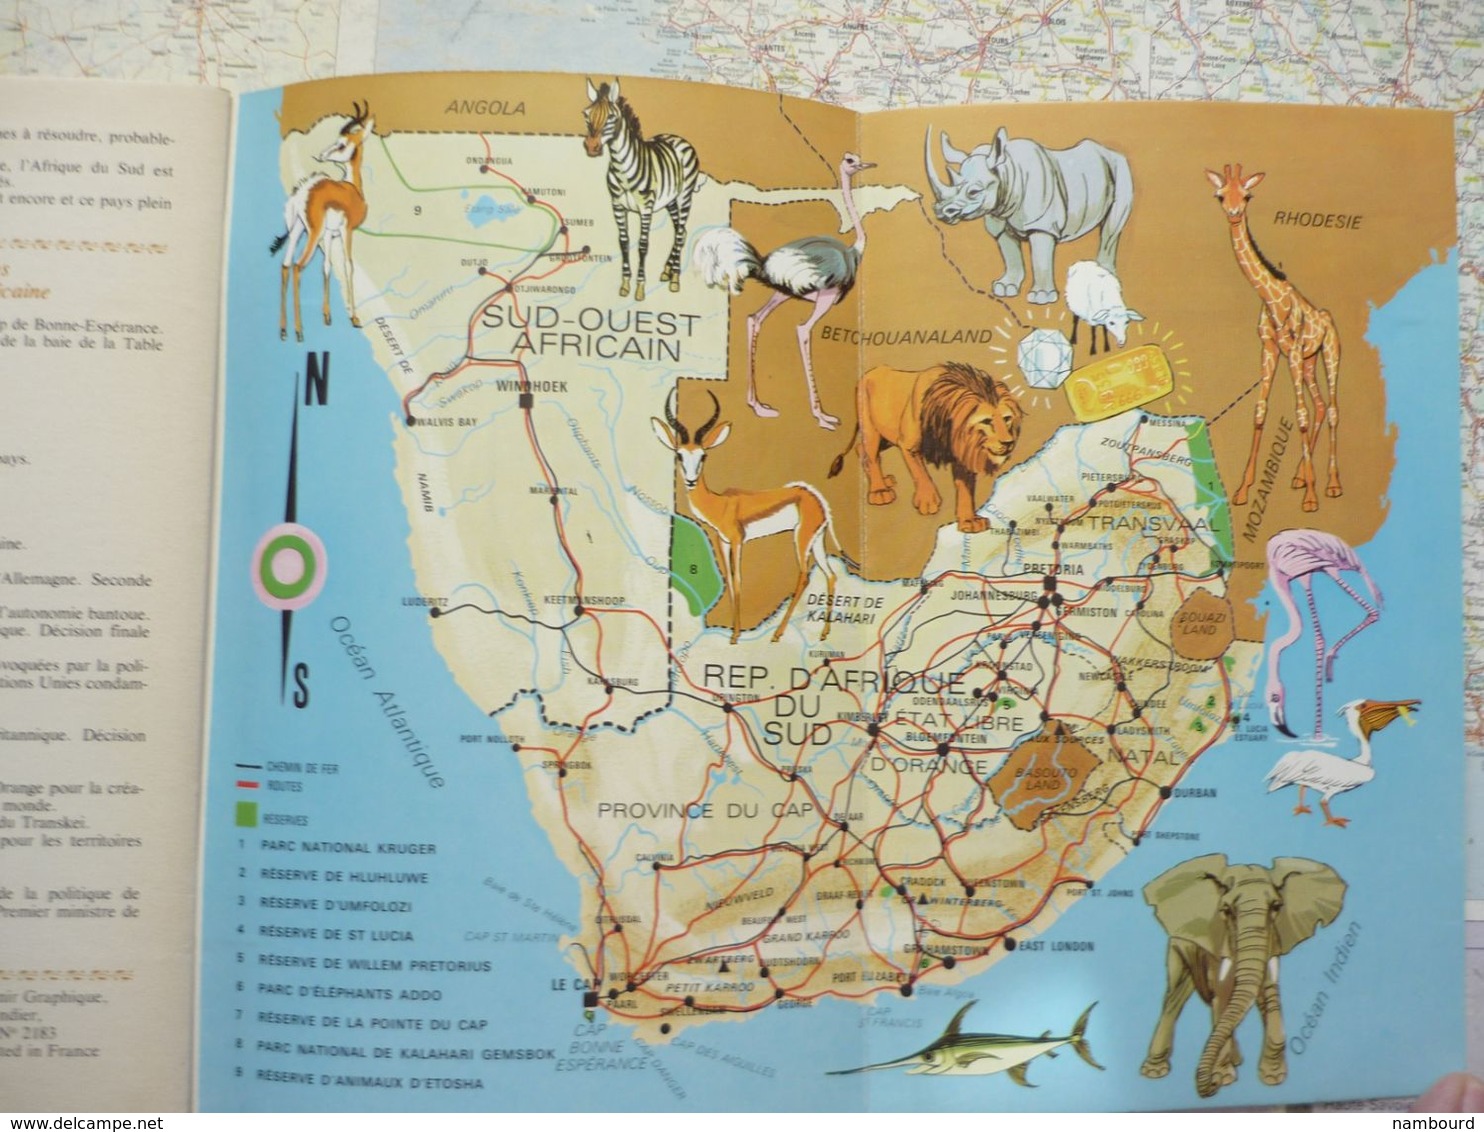 Tour du Monde N°190 République d'Afrique du Sud Juillet 1975